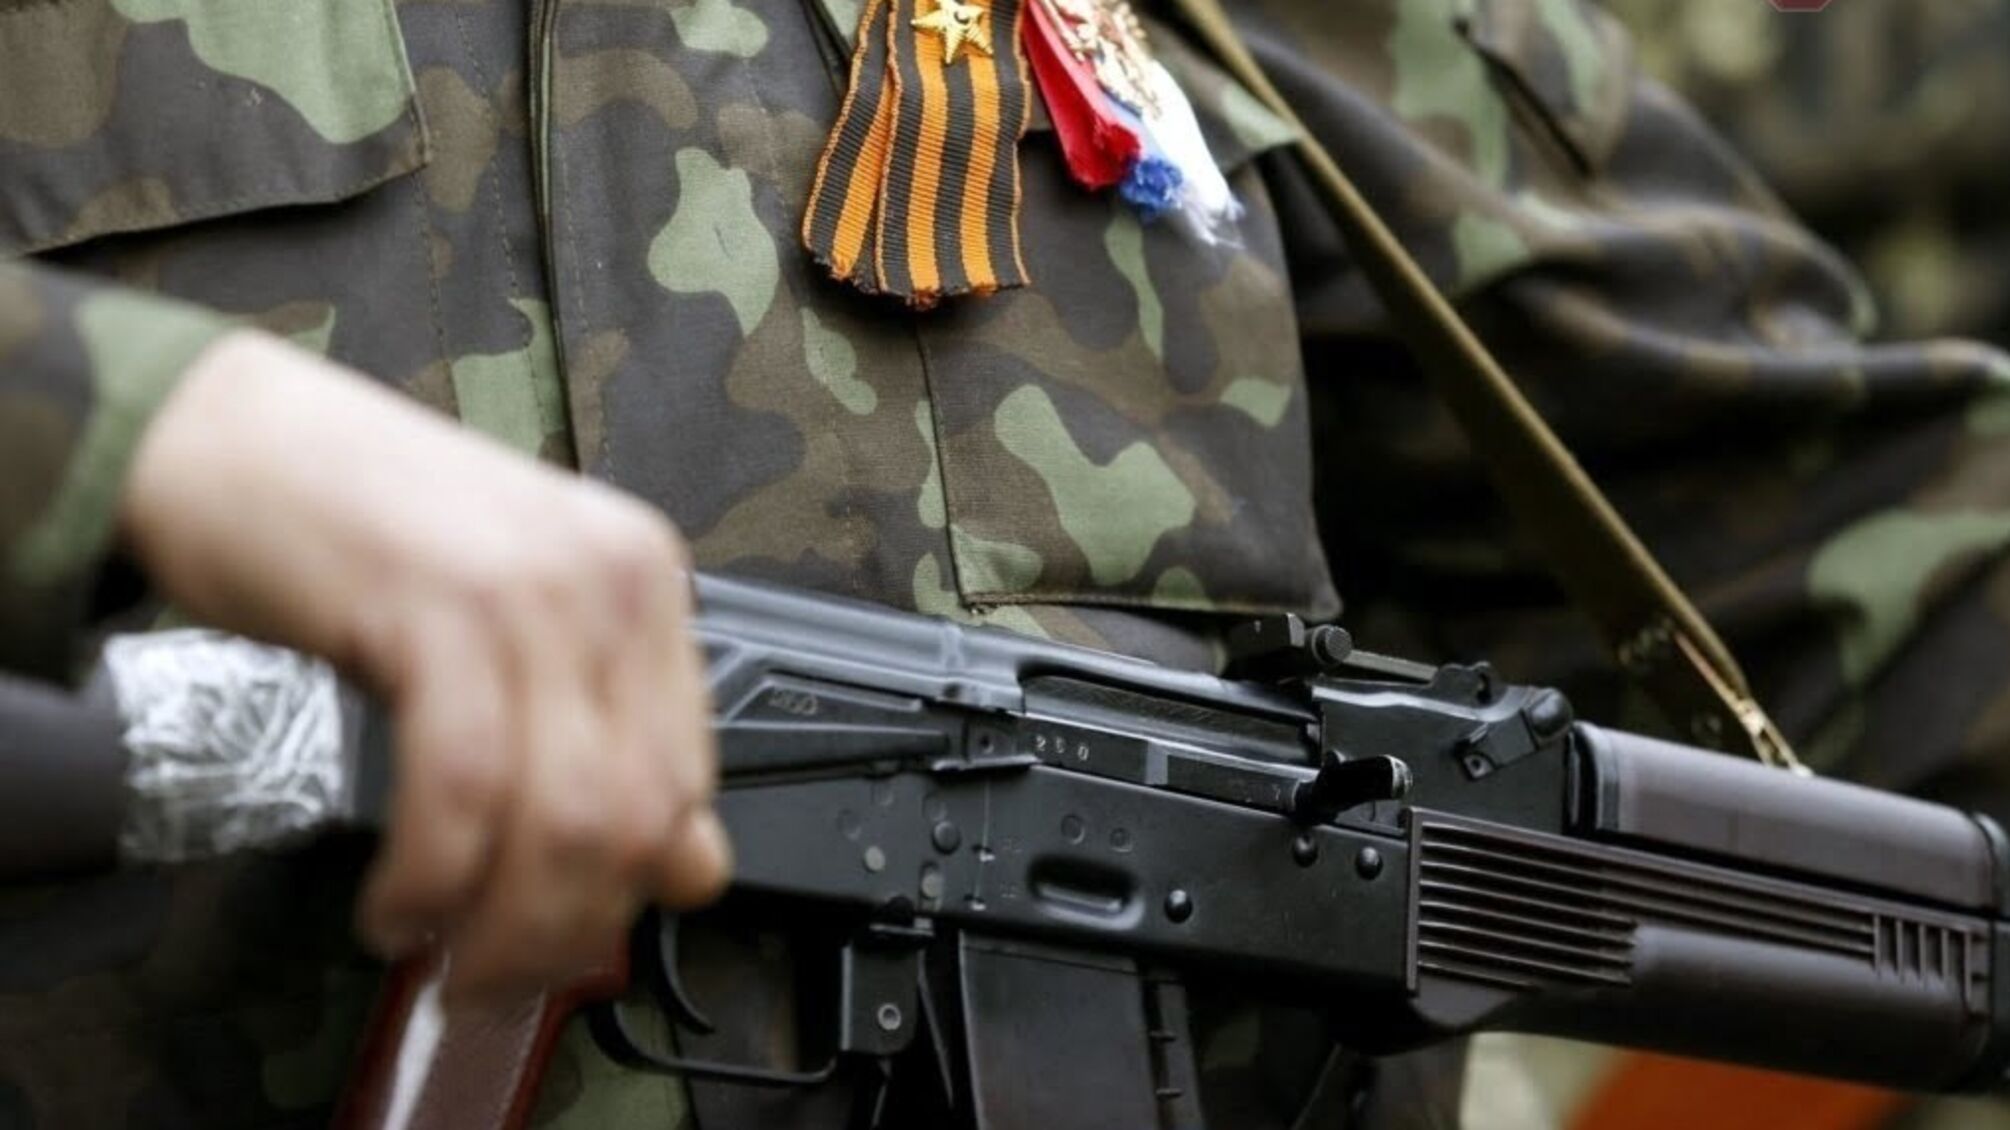 На Донбасі бойовики знову відкривали вогонь, є поранений